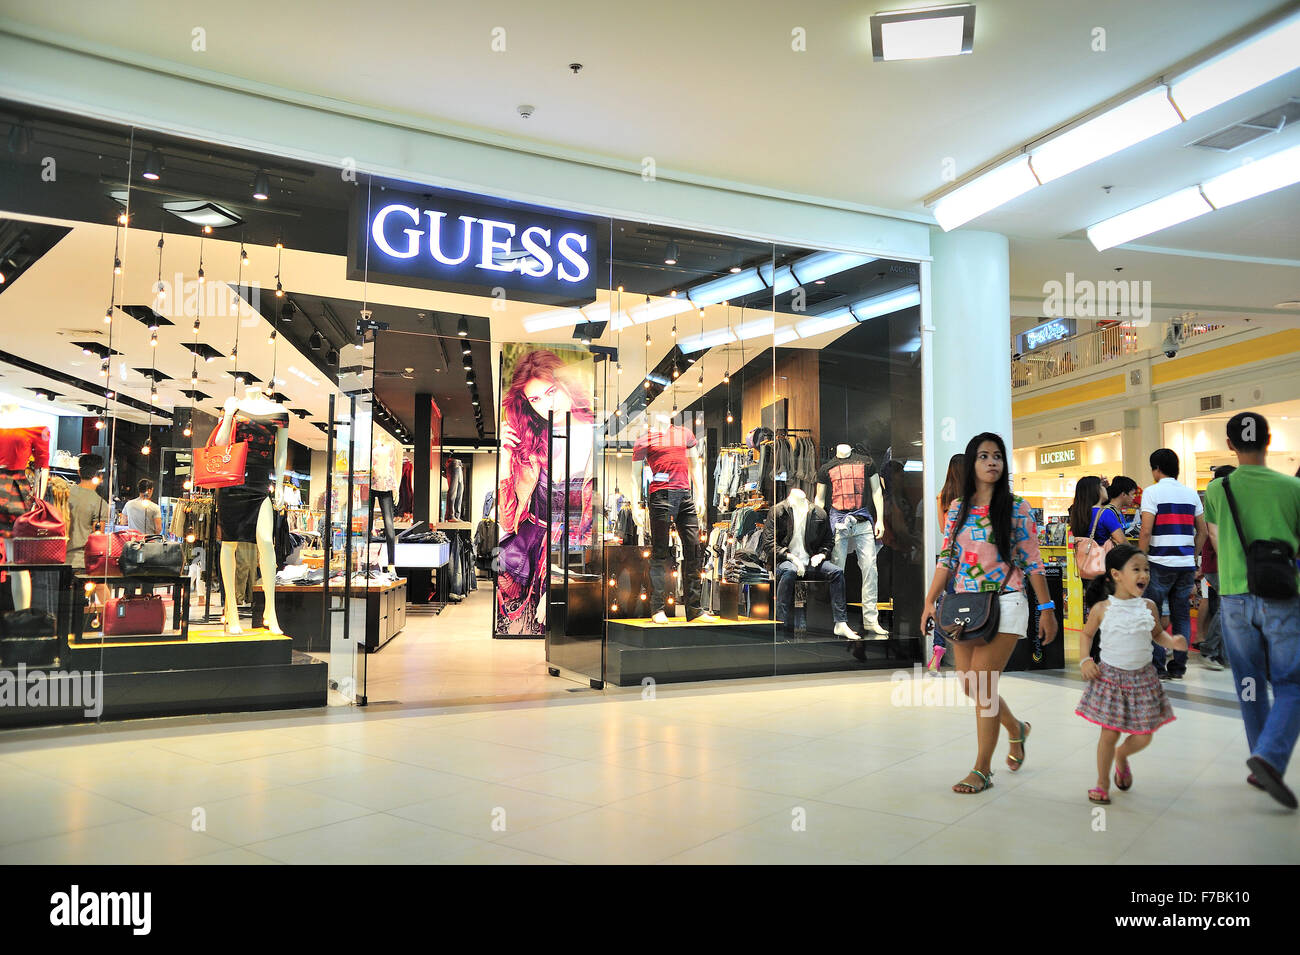 Guess Fashion Store Ayala Center Cebu City Philippines Stock Photo